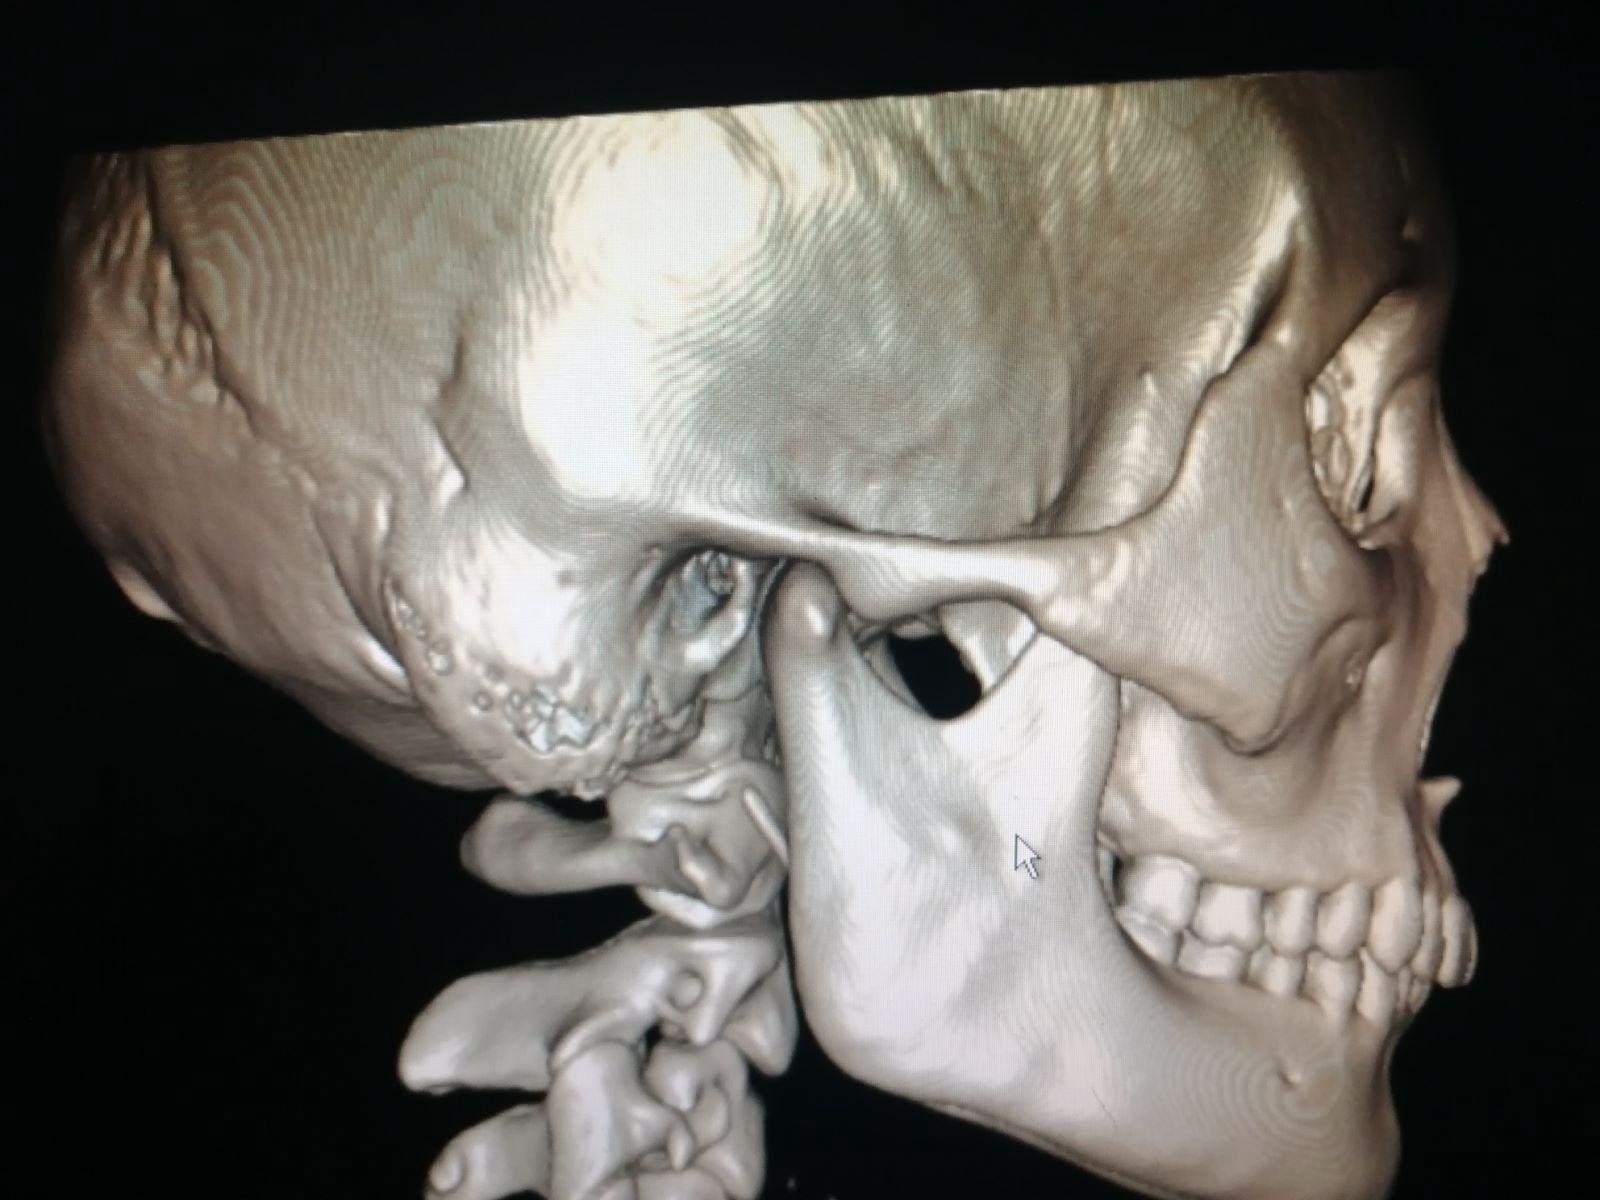 鼻骨骨折 手术图片